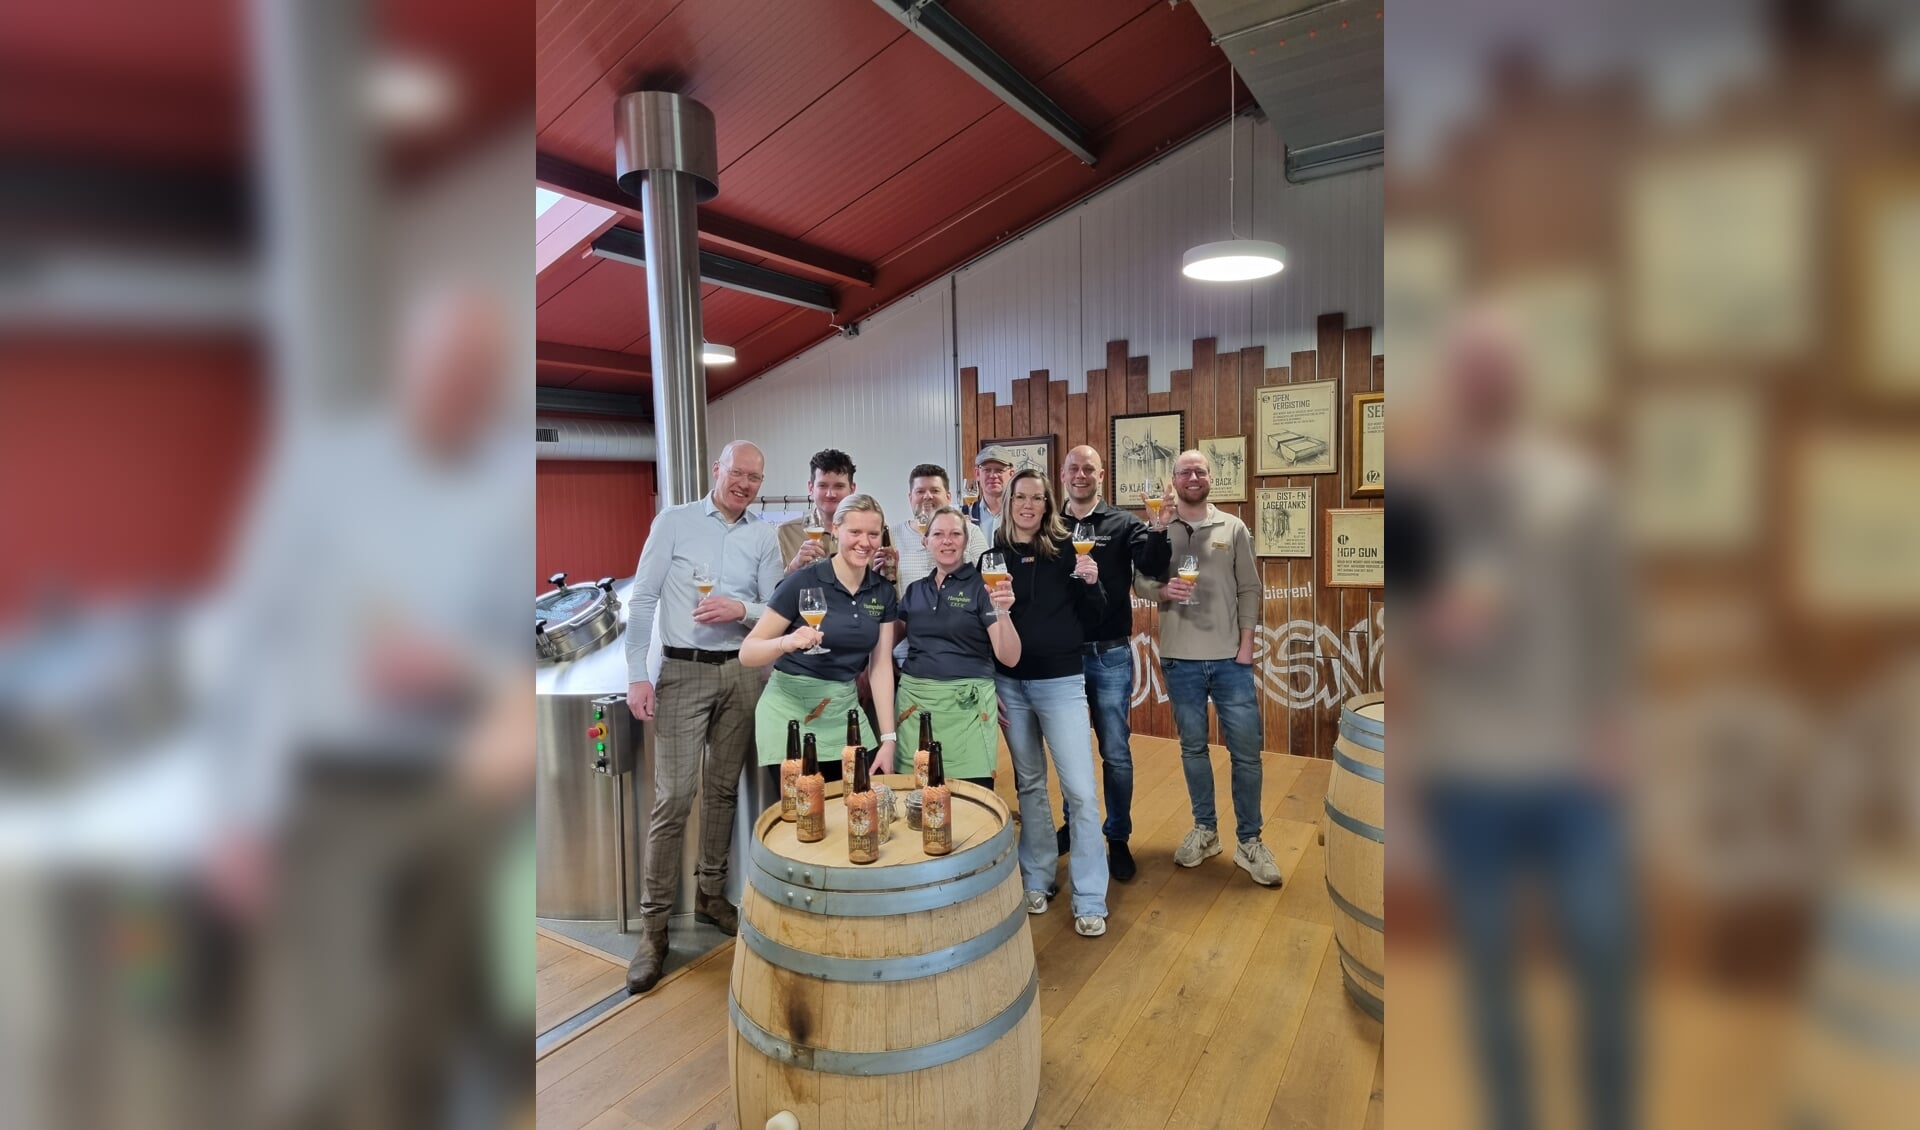 Pieter Stam toog vorige week samen met de horecaondernemers naar de ambachtelijke brouwerij Brouwersnös om de eerste flesjes van Reurlse Weizen van de lopende band te halen. Foto: PR